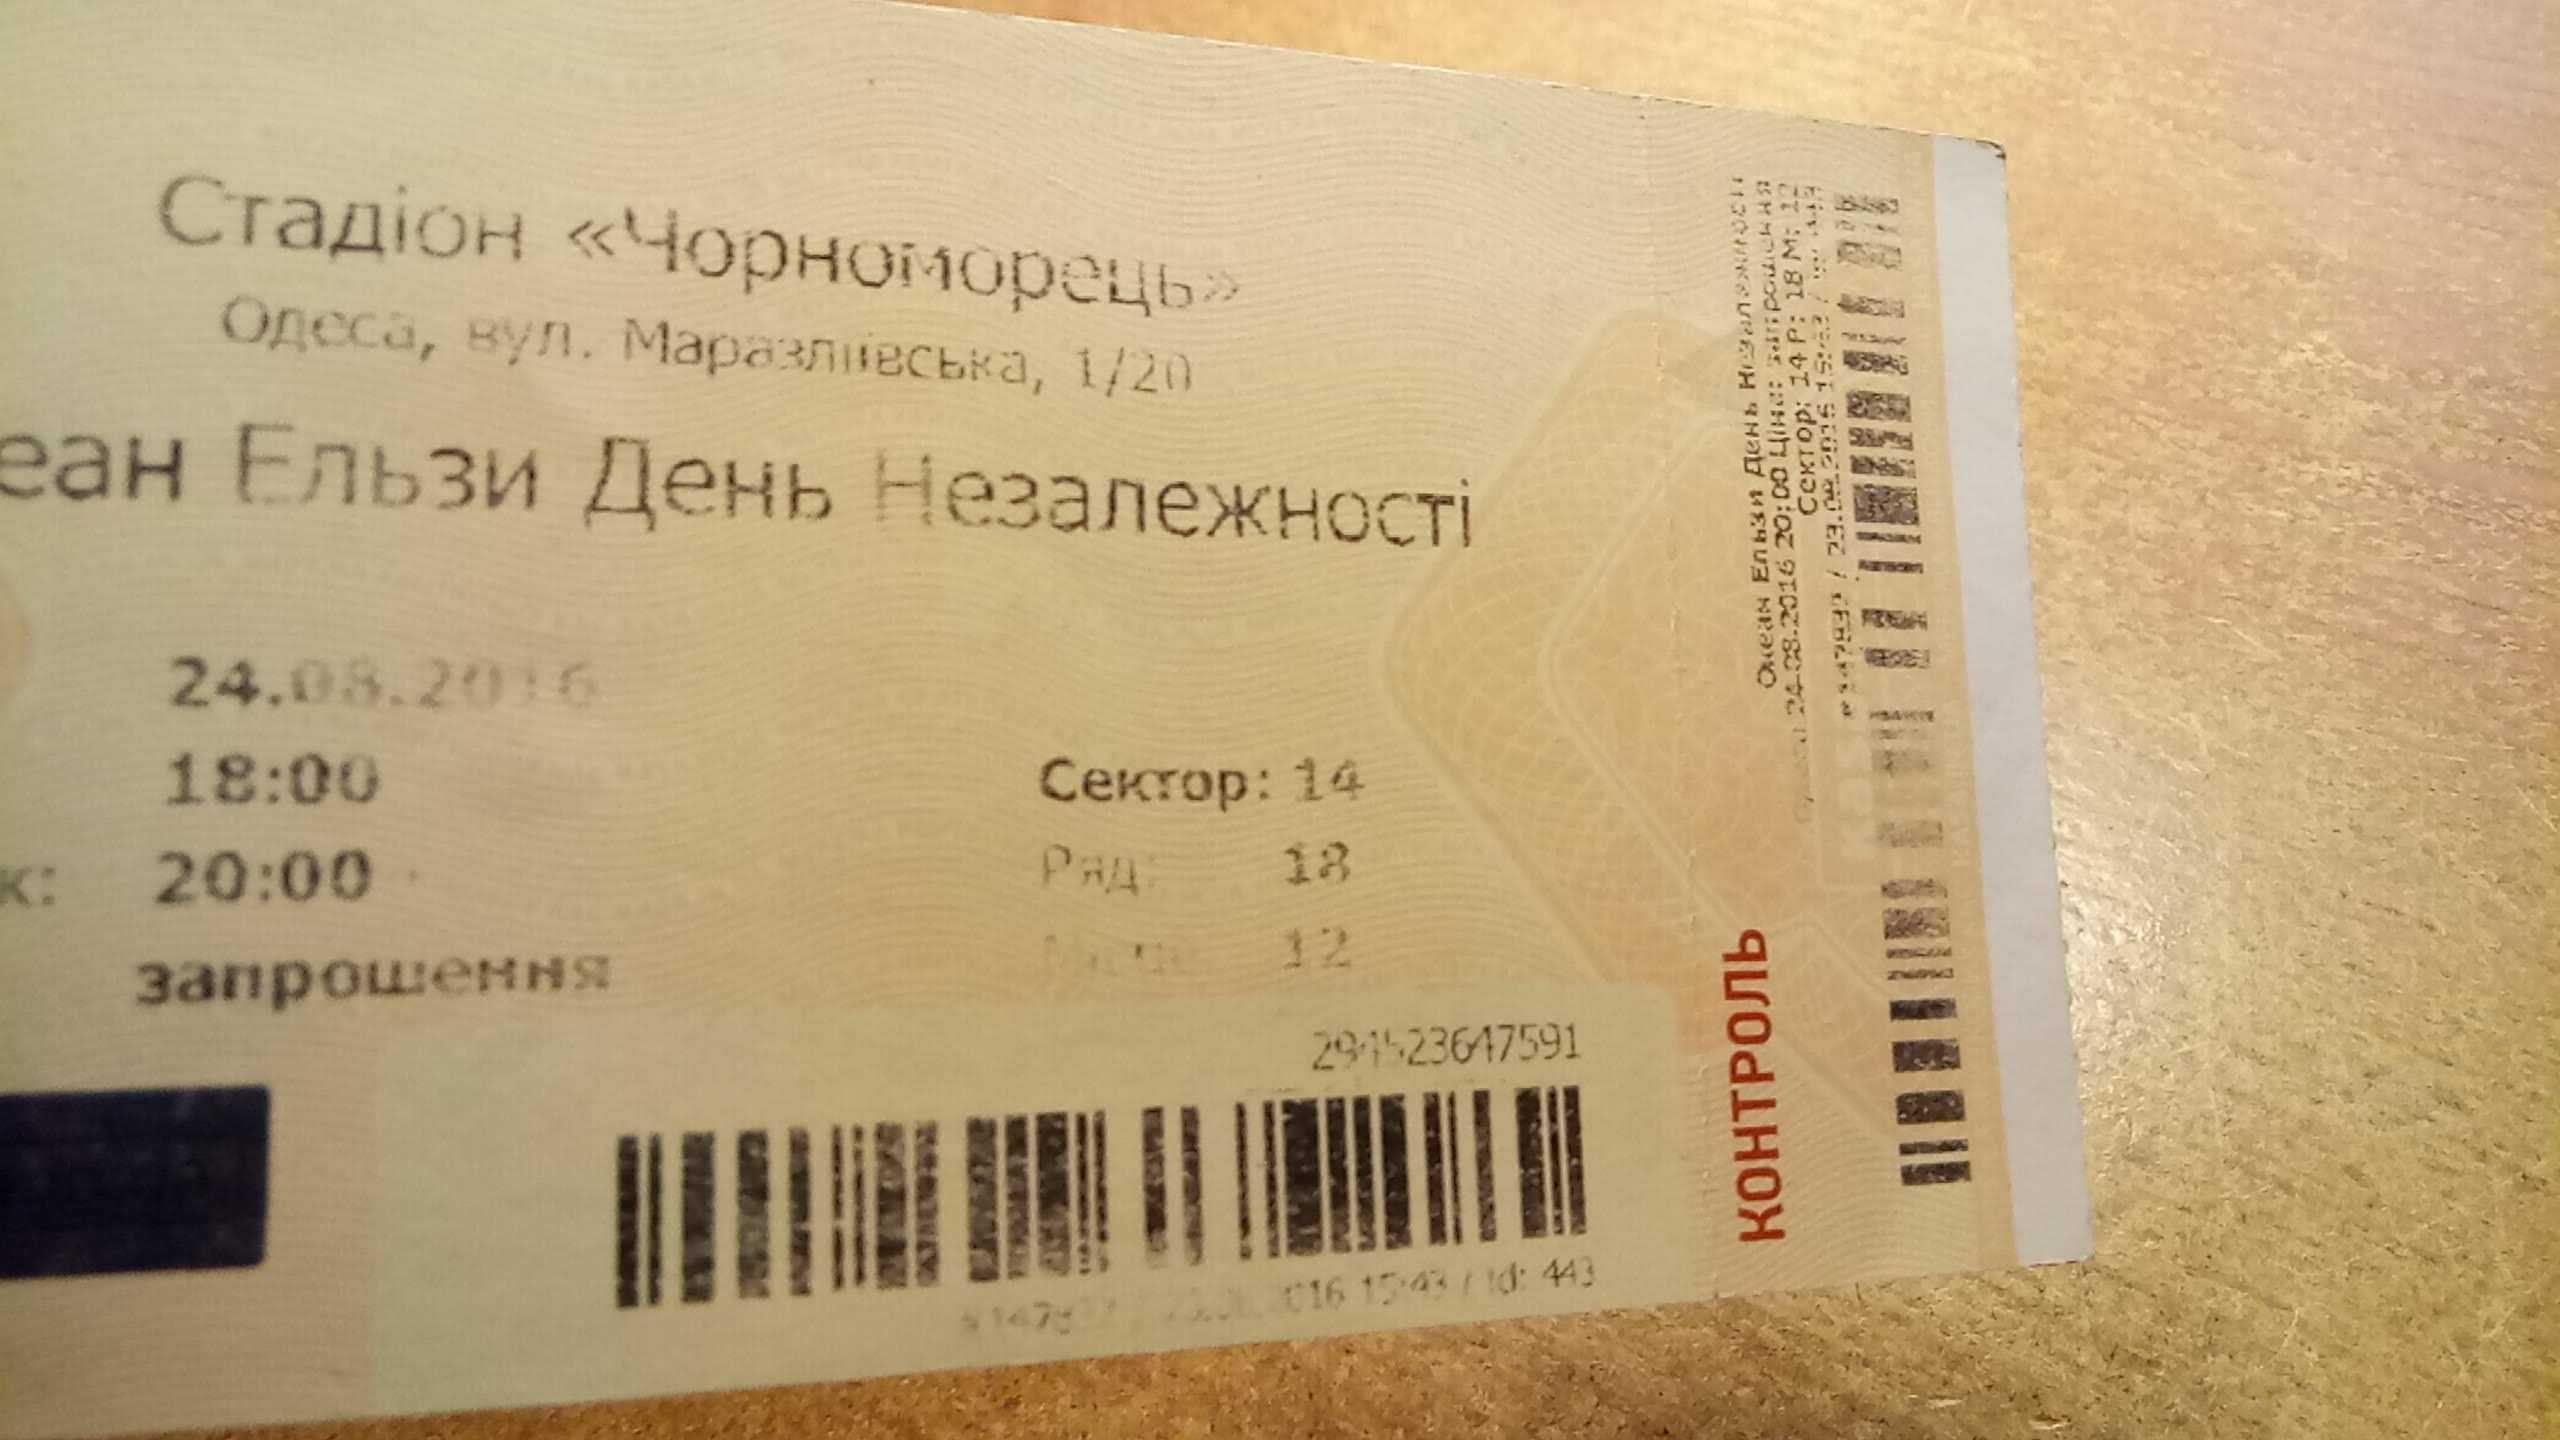 коллекционный билет на " Океан Эльзы ", Одесса 24.08.2016г., контроль